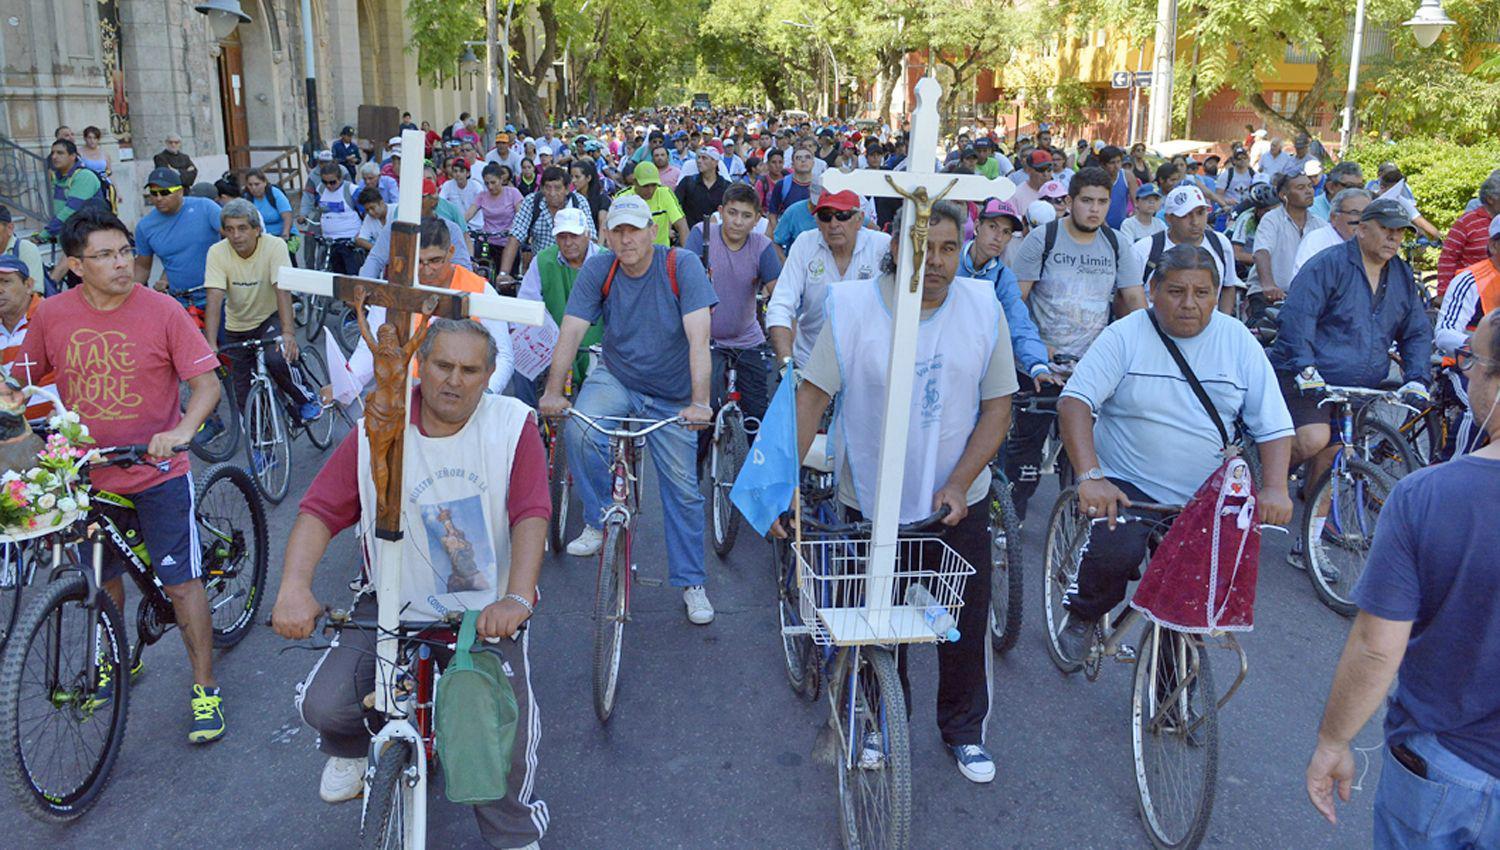 El tradicional Viacutea Crucis en bicicleta ya recorre las calles de la ciudad